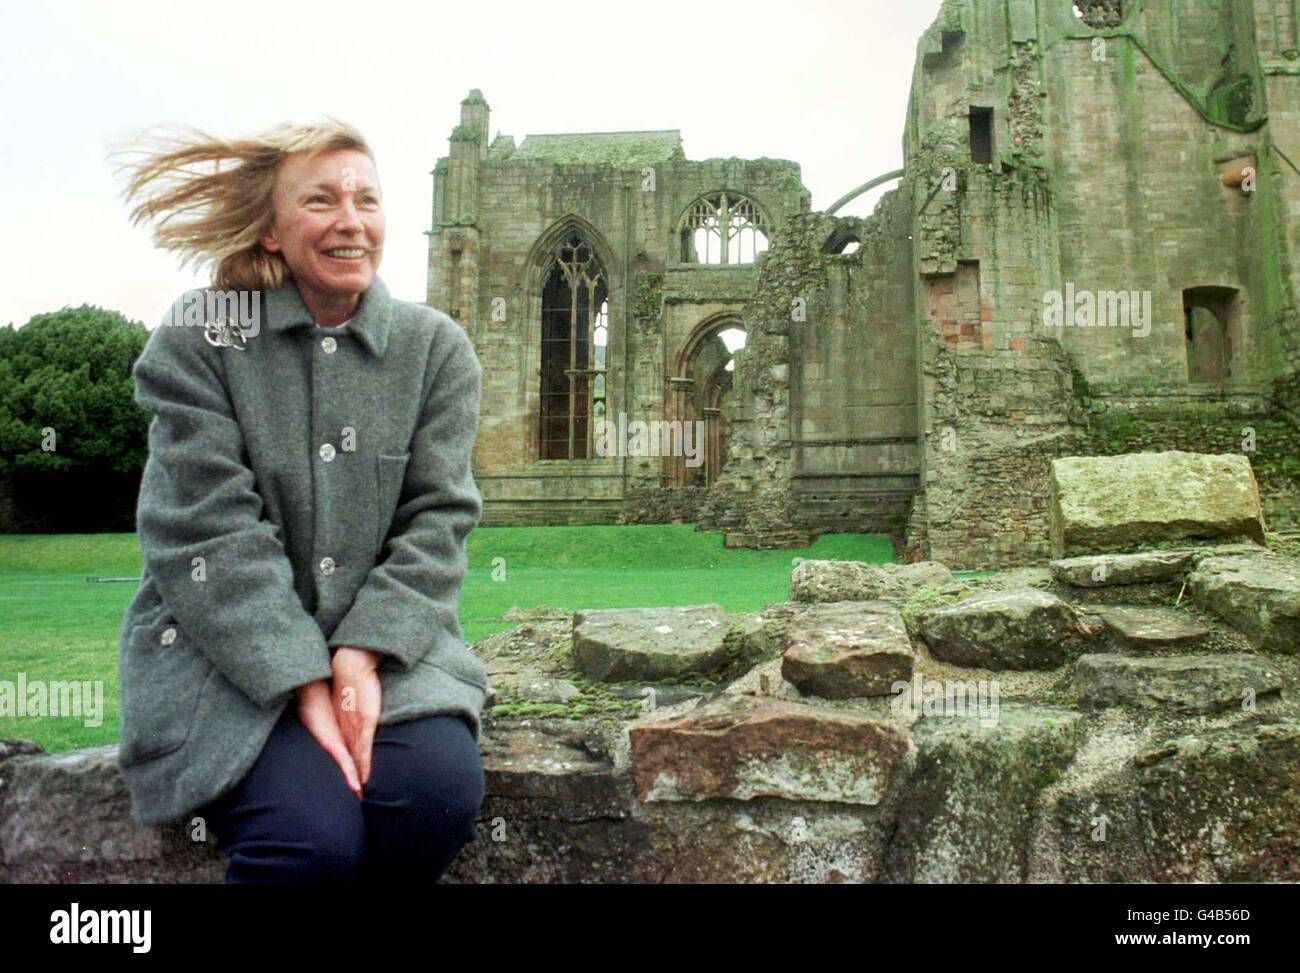 Victoria Oswald, 39 ans, ingénieur du son de la BBC, qui vit dans le Kent, à l'abbaye de Melrose en Écosse aujourd'hui (lundi), après avoir remporté le concours national de l'Écosse historique pour concevoir un mémorial approprié pour l'abbaye, qui sera le dernier lieu de repos du coeur de Robert the Bruce,Qui sera finalement retourné à l'abbaye de Melrose et mis au repos 684 ans après sa victoire dans la bataille de Bannockburn.Voir PA Story SCOTLAND Bruce.Photo de David Cheskin. Banque D'Images